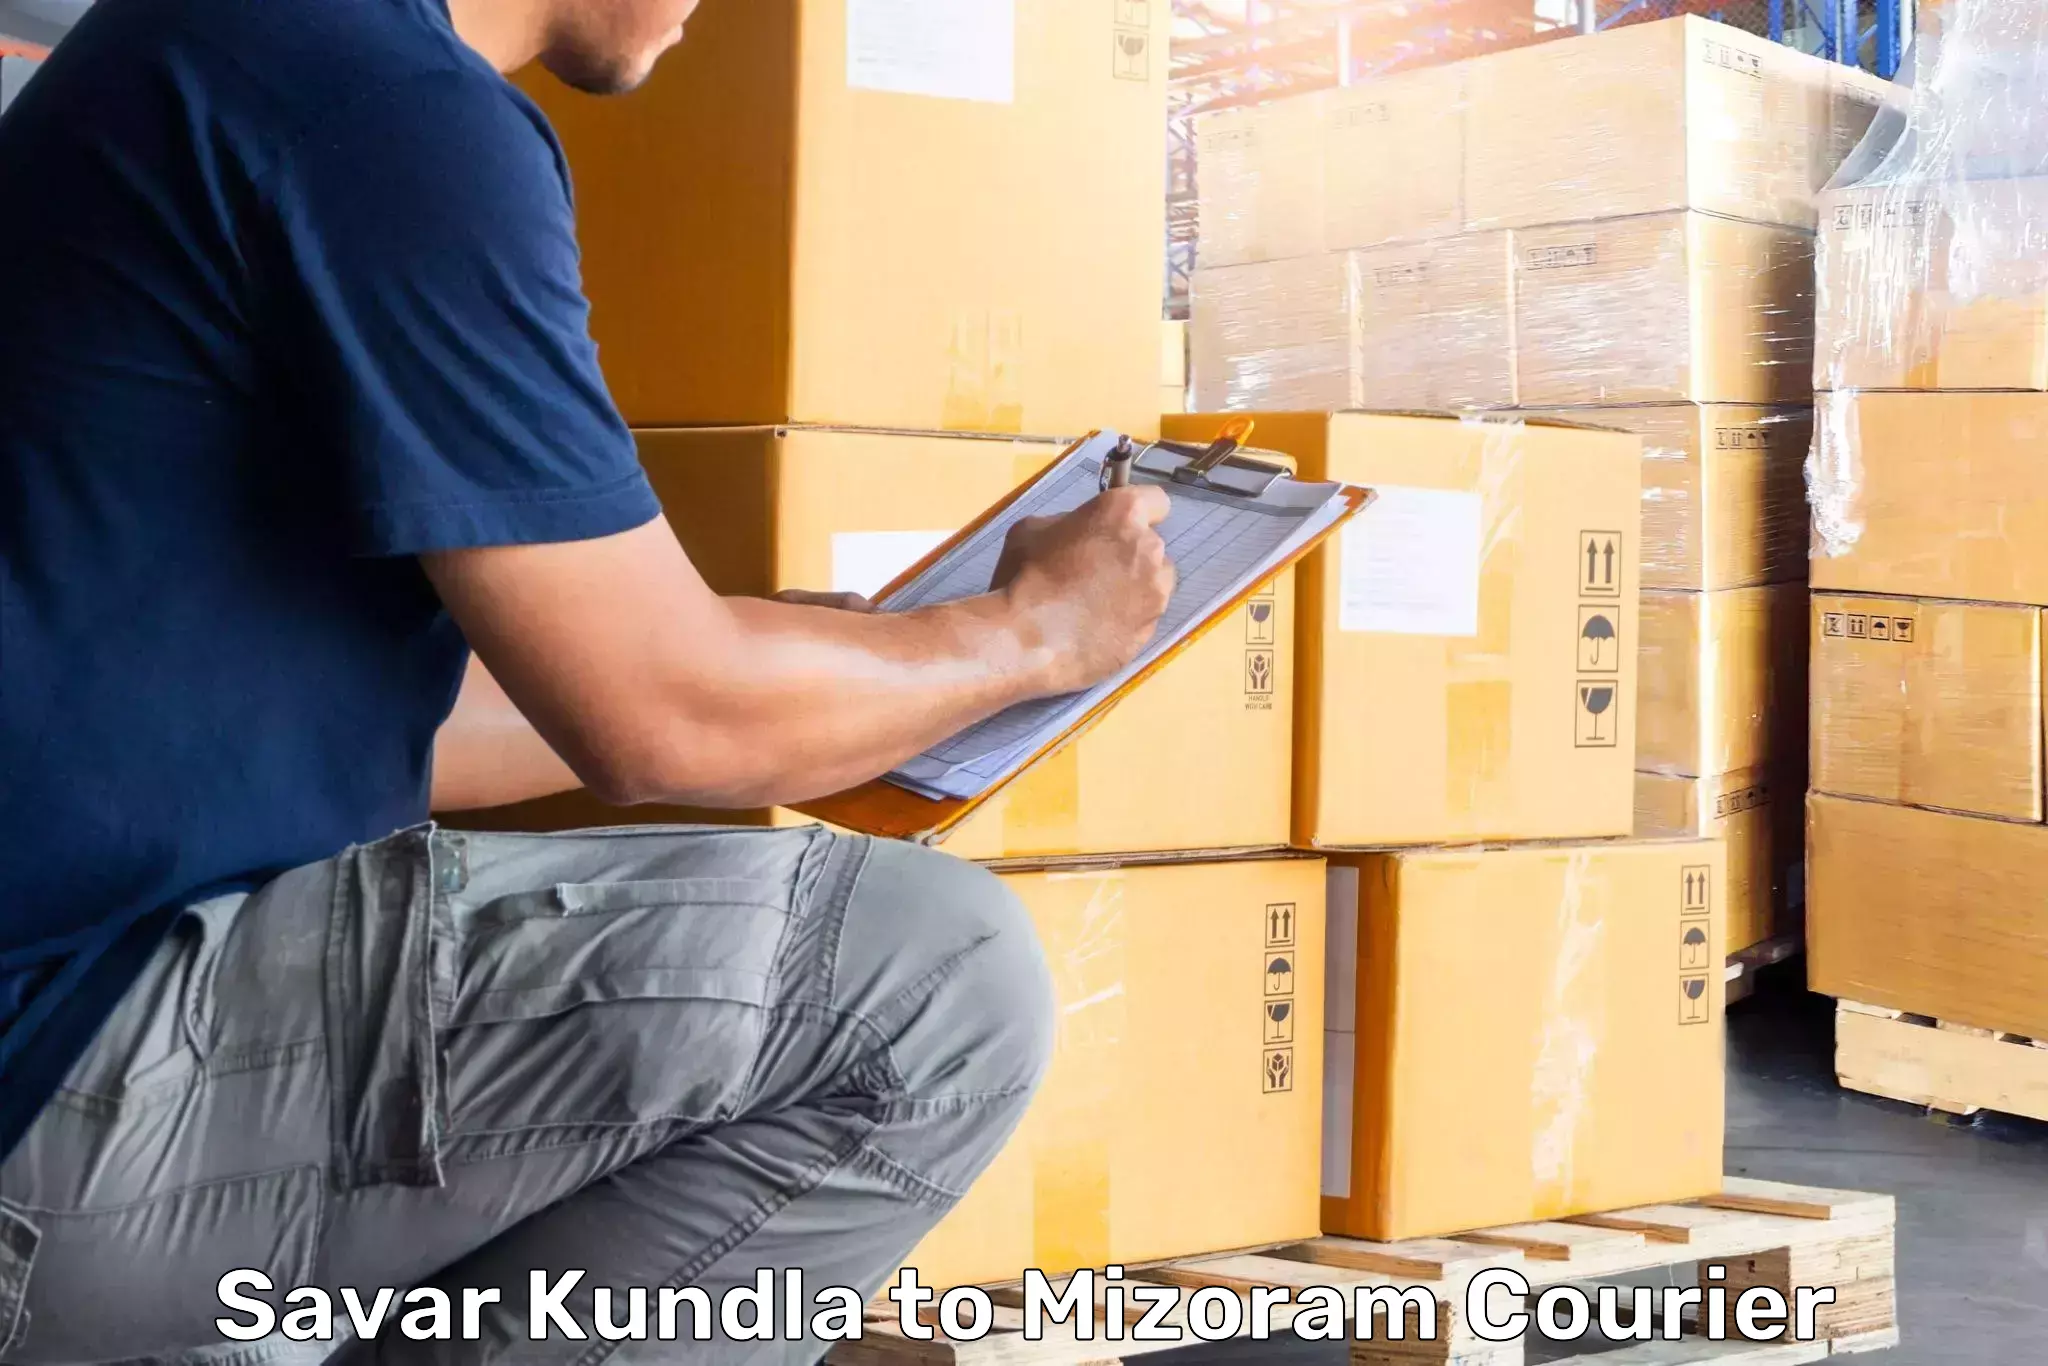 Versatile luggage courier Savar Kundla to Khawzawl